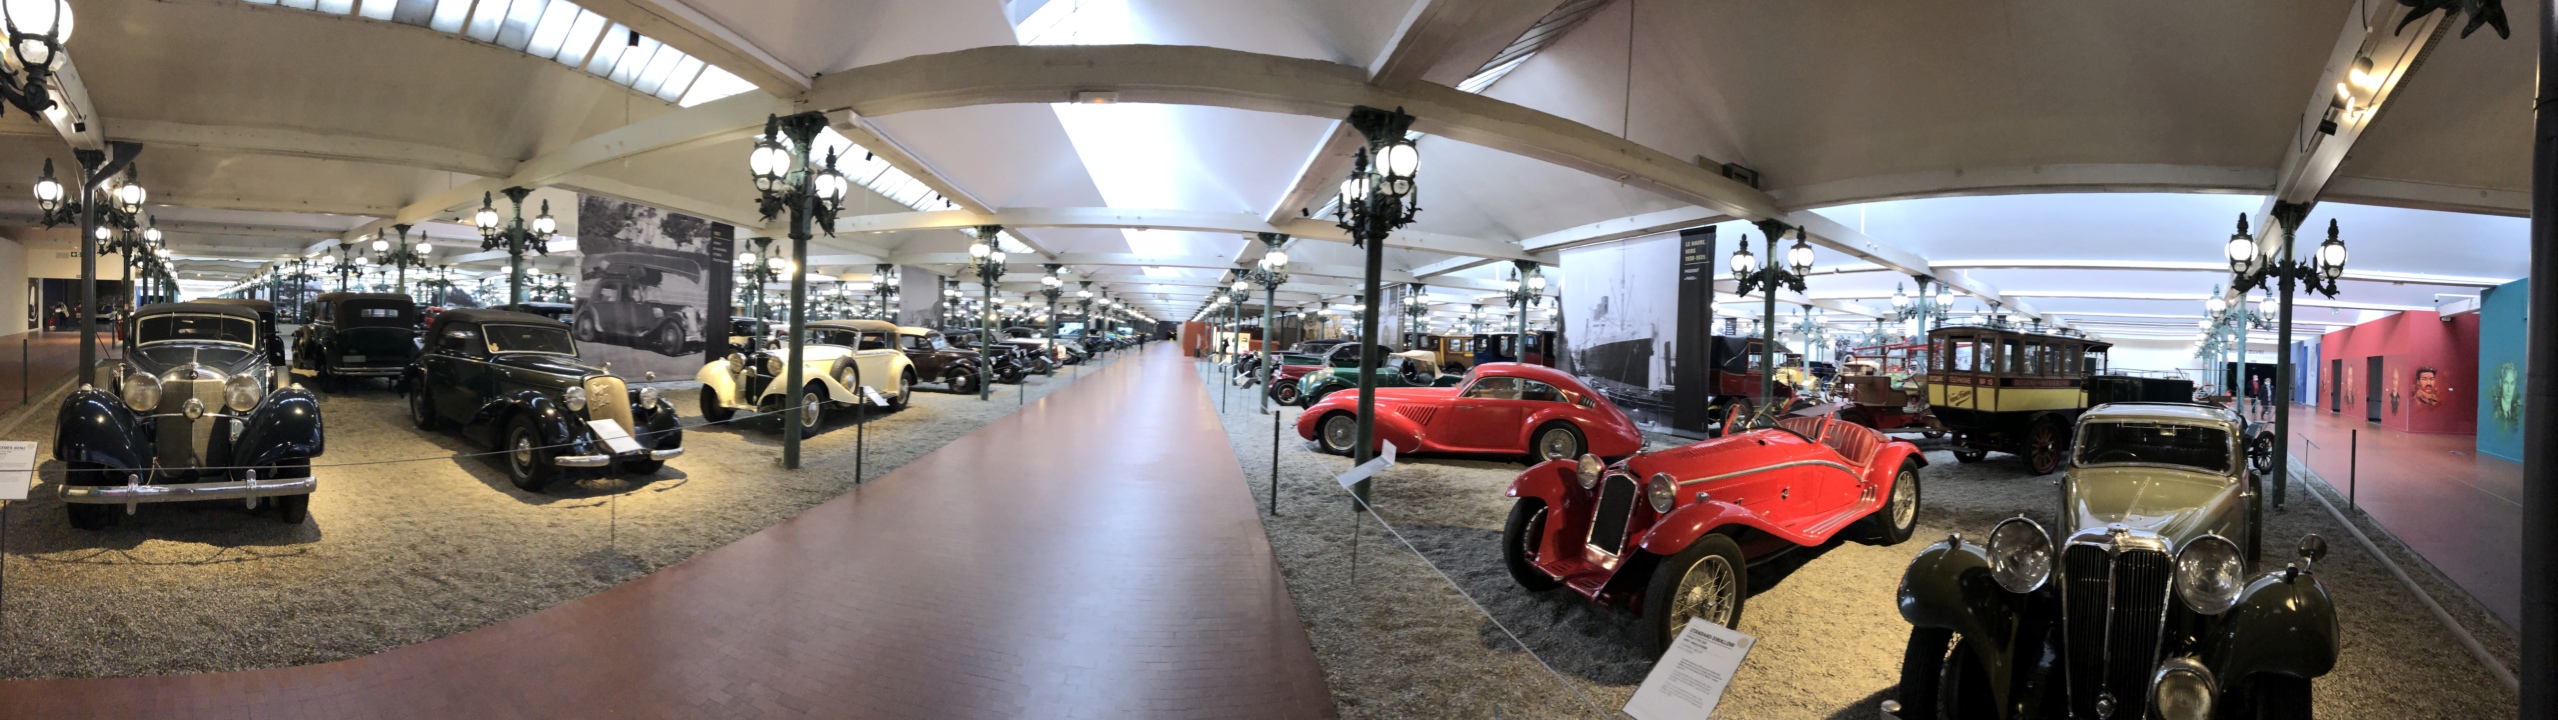 Mulhouse : la Cité de l'automobile, the largest car museum in the world. - Page 2 Tsge2493